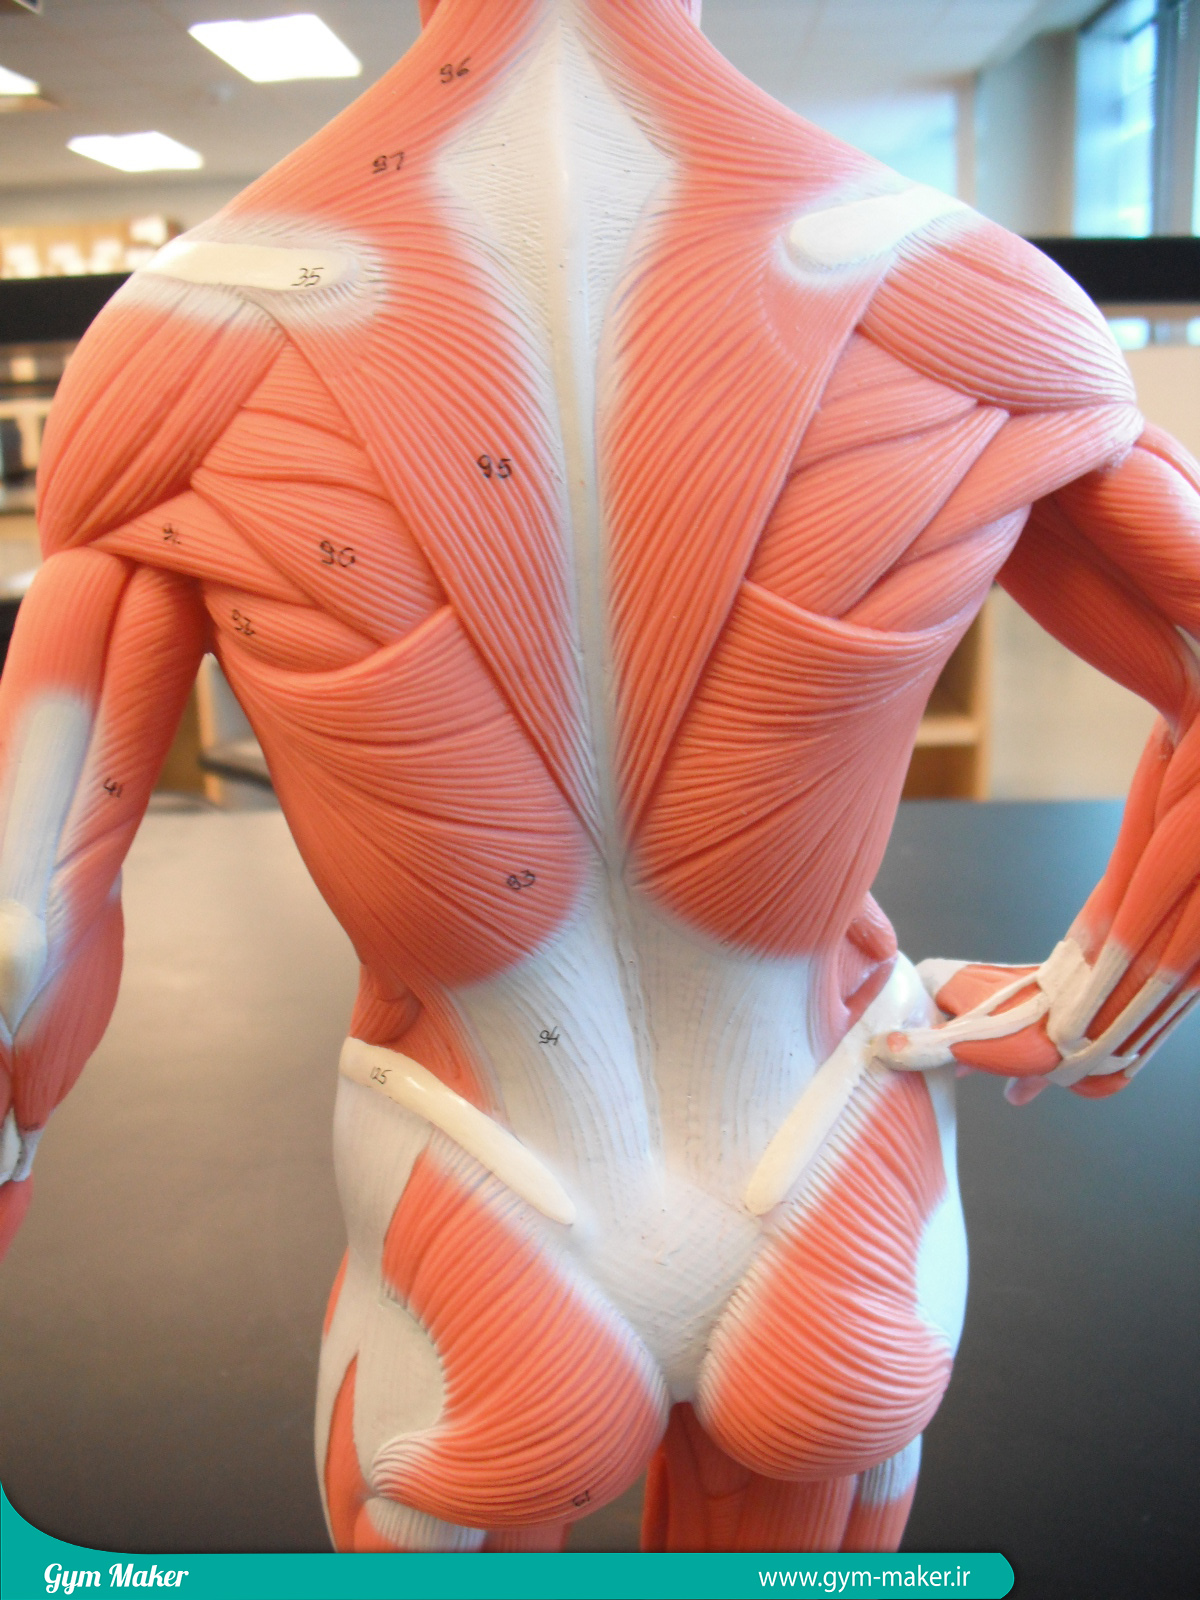 گروه های عضلات بدن